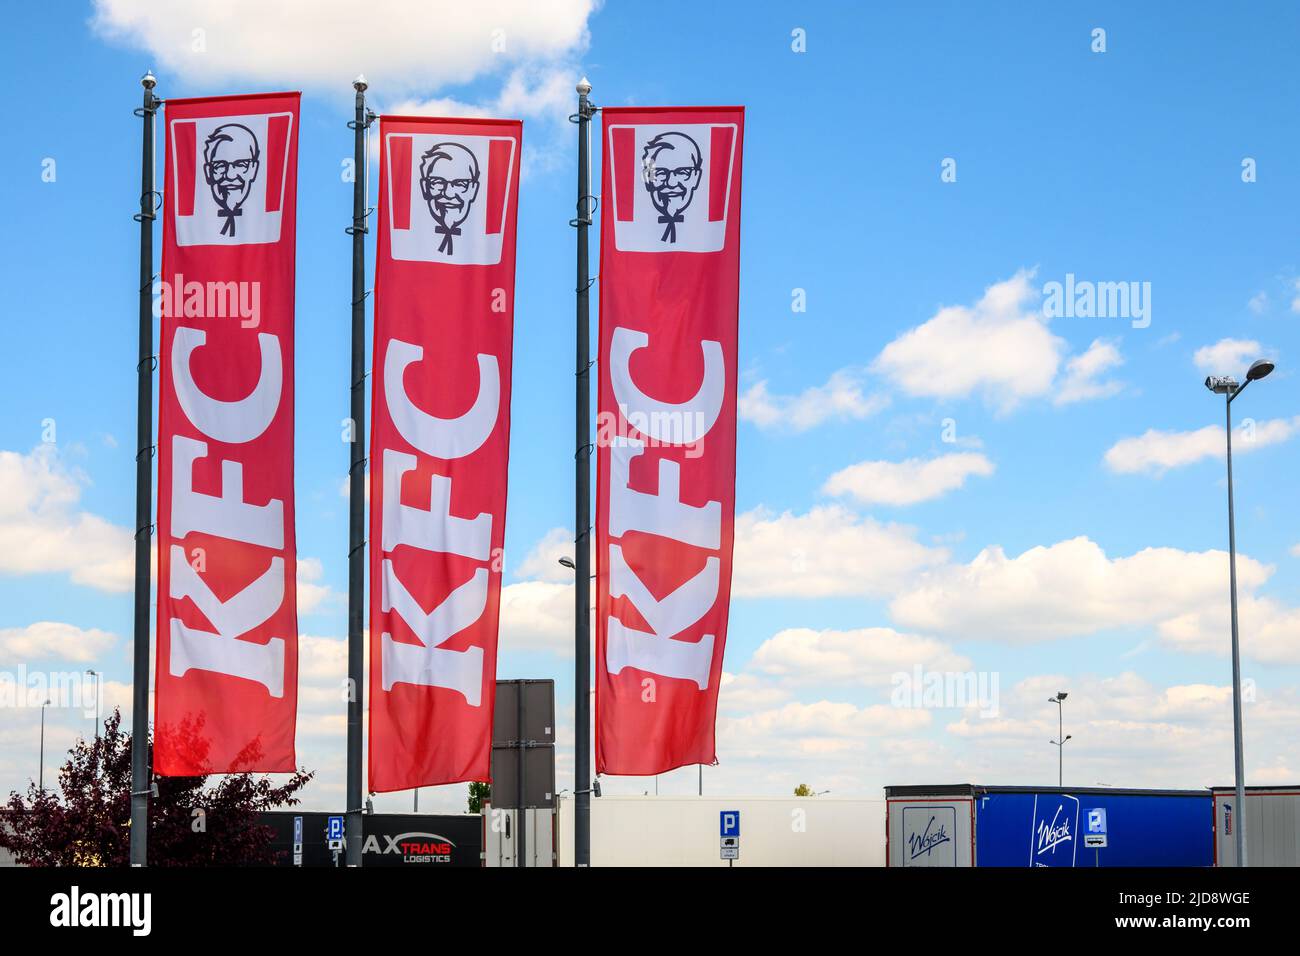 Baranow, Pologne - 3 juin 2022: Drapeaux avec le logo de KFC la chaîne de fast-food américaine en Pologne. Europe Banque D'Images